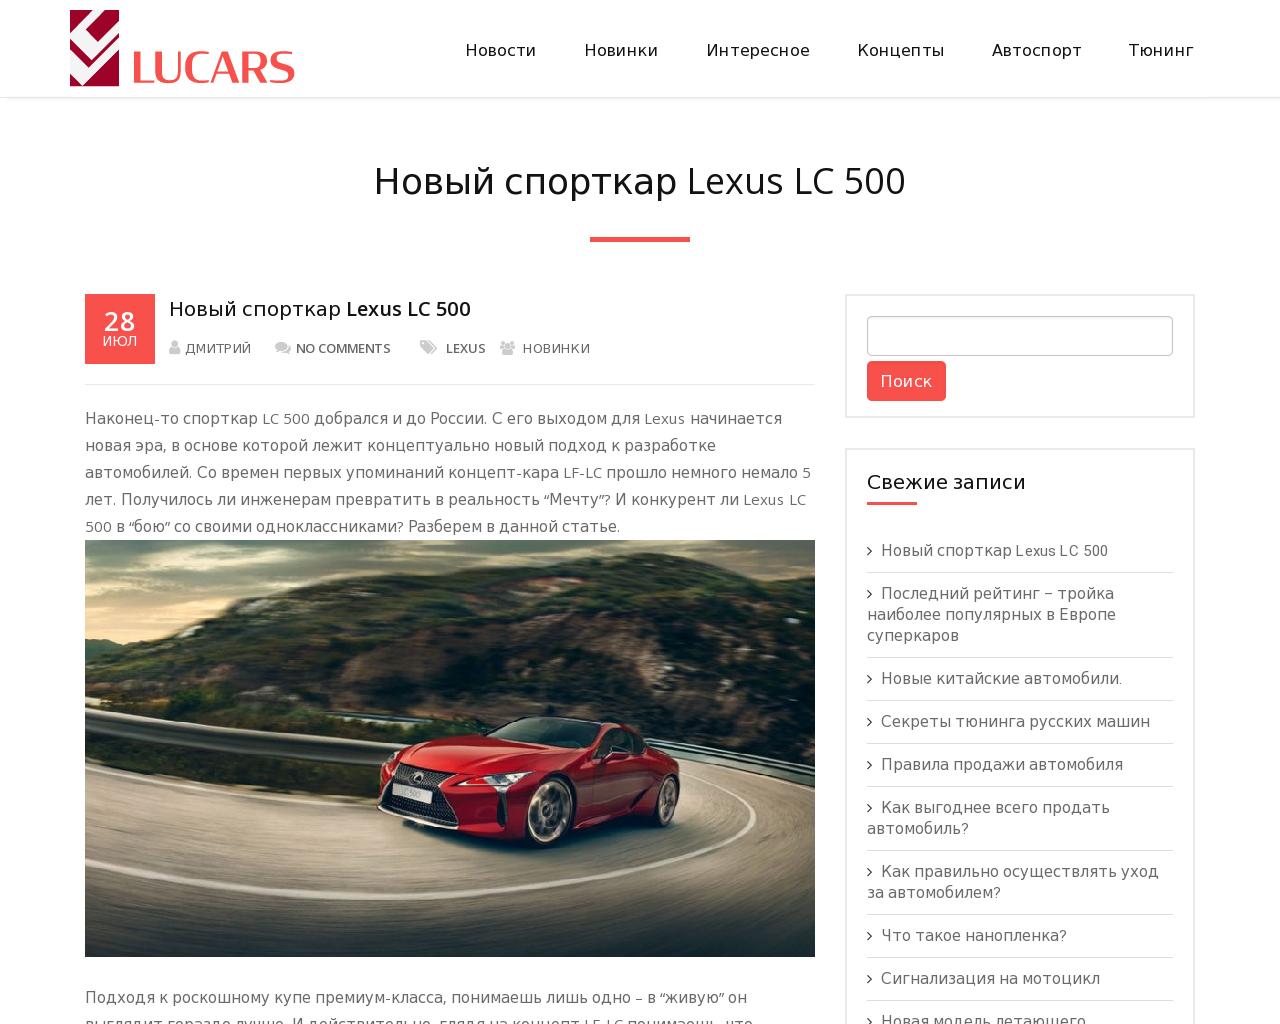 Изображение сайта lucars.ru в разрешении 1280x1024